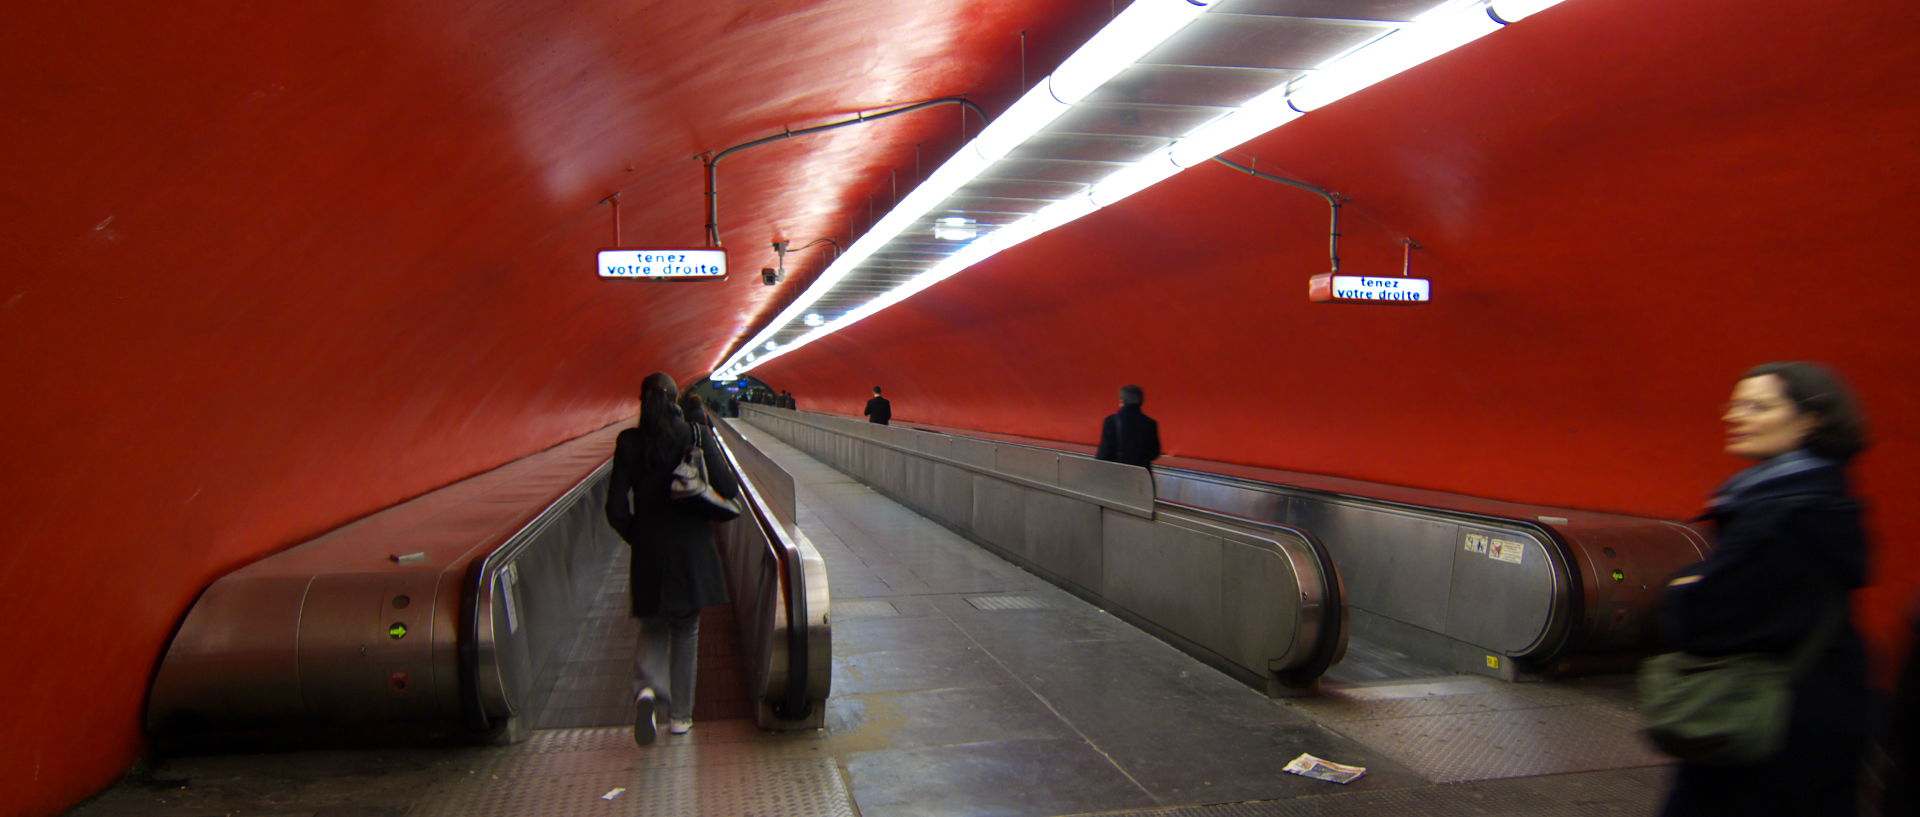 Jeudi 12 février 2009, 19:00, station de RER Auber, à Paris.